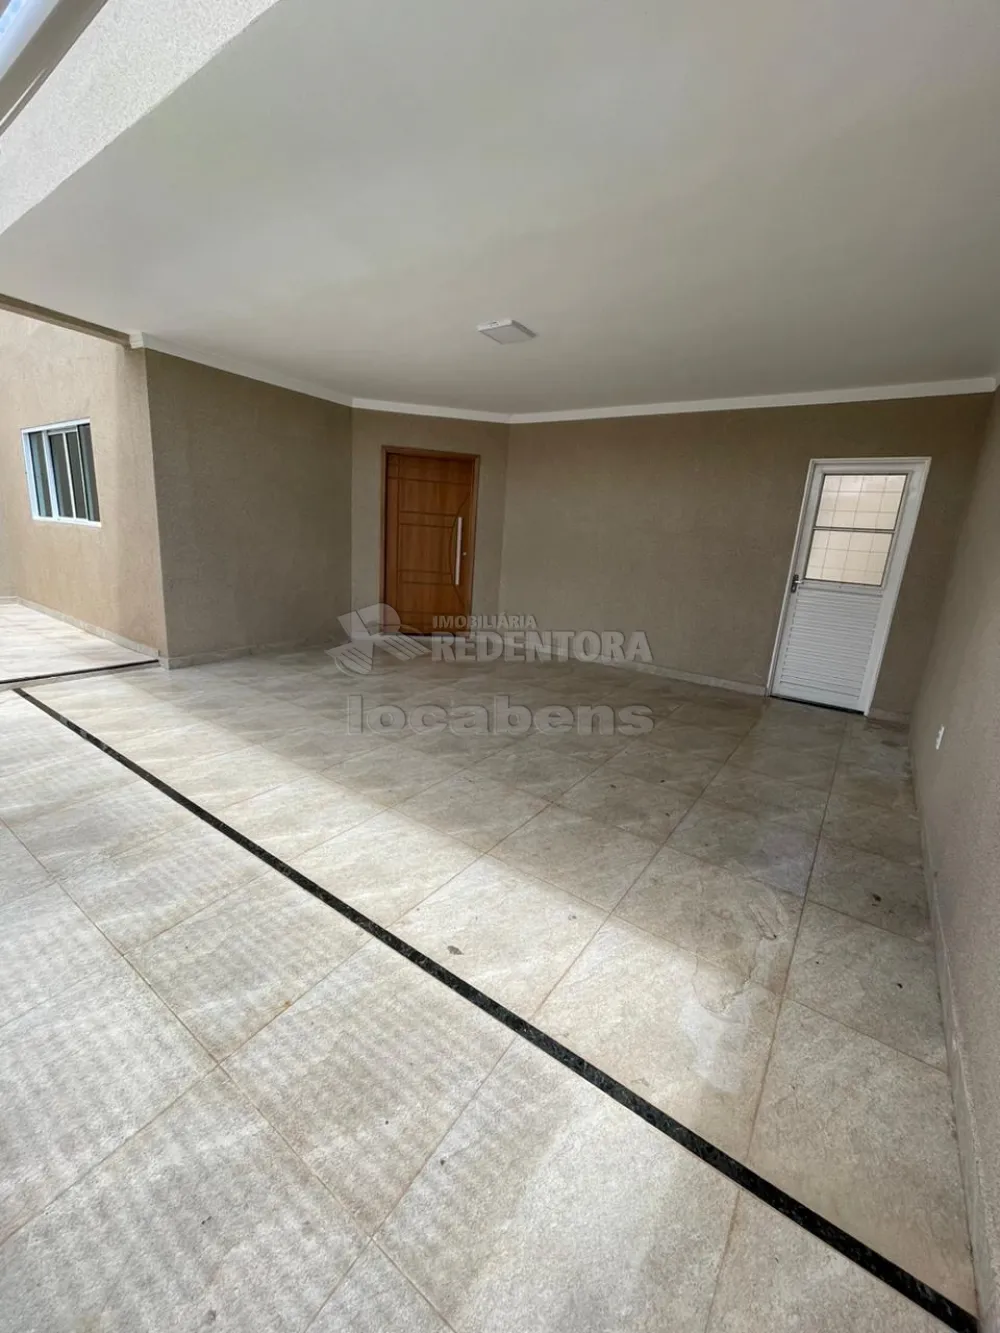 Comprar Casa / Padrão em Mirassol R$ 450.000,00 - Foto 4